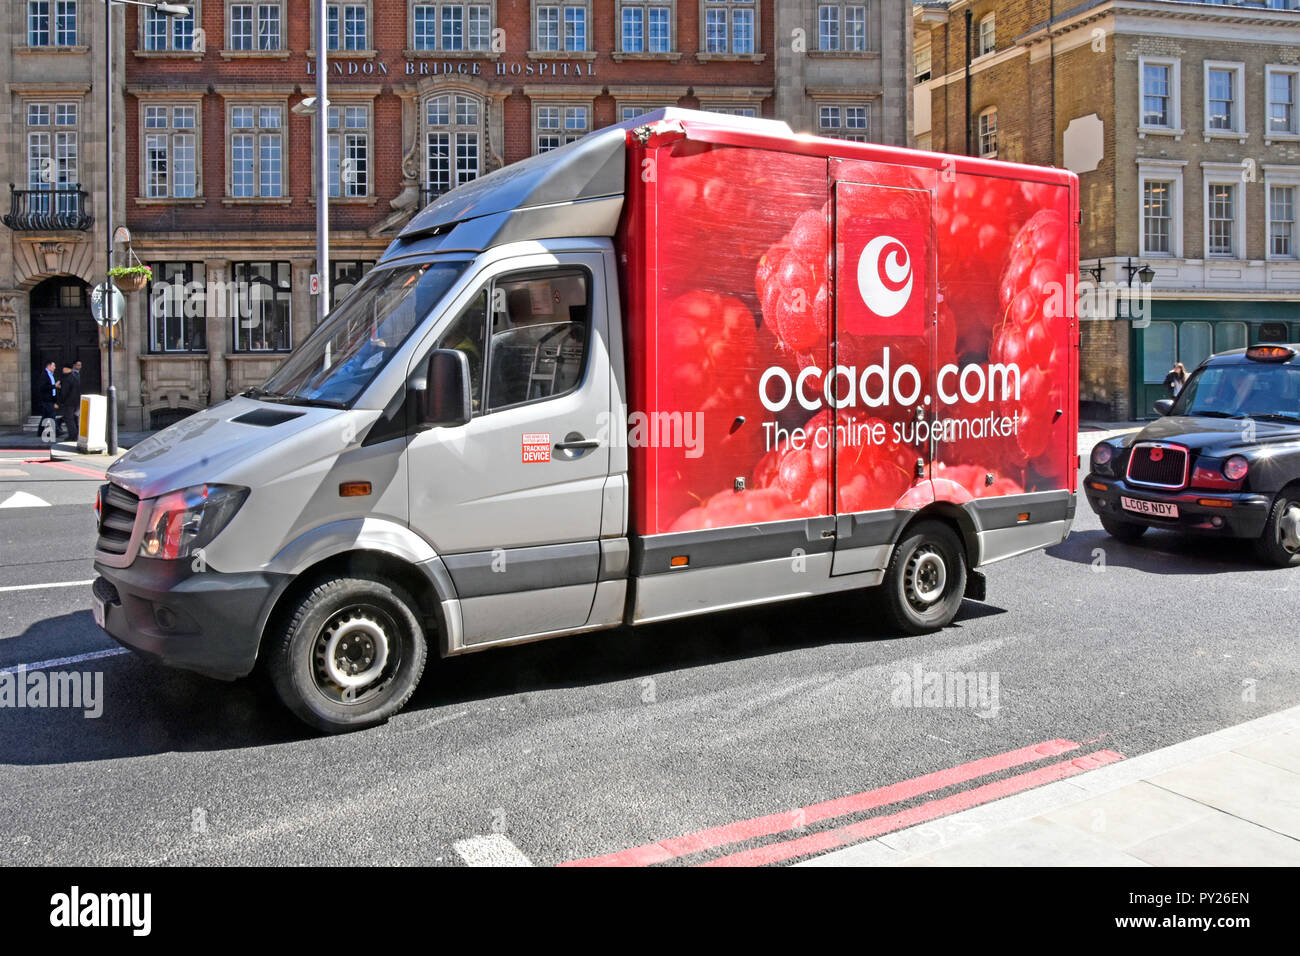 Red Ocado internet Lebensmittel Lebensmittel Supermarkt Lieferwagen in London Netzwerkverkehrs-warteschlange, Lieferung nach Hause reisen Shopping Kunden England UK online Stockfoto